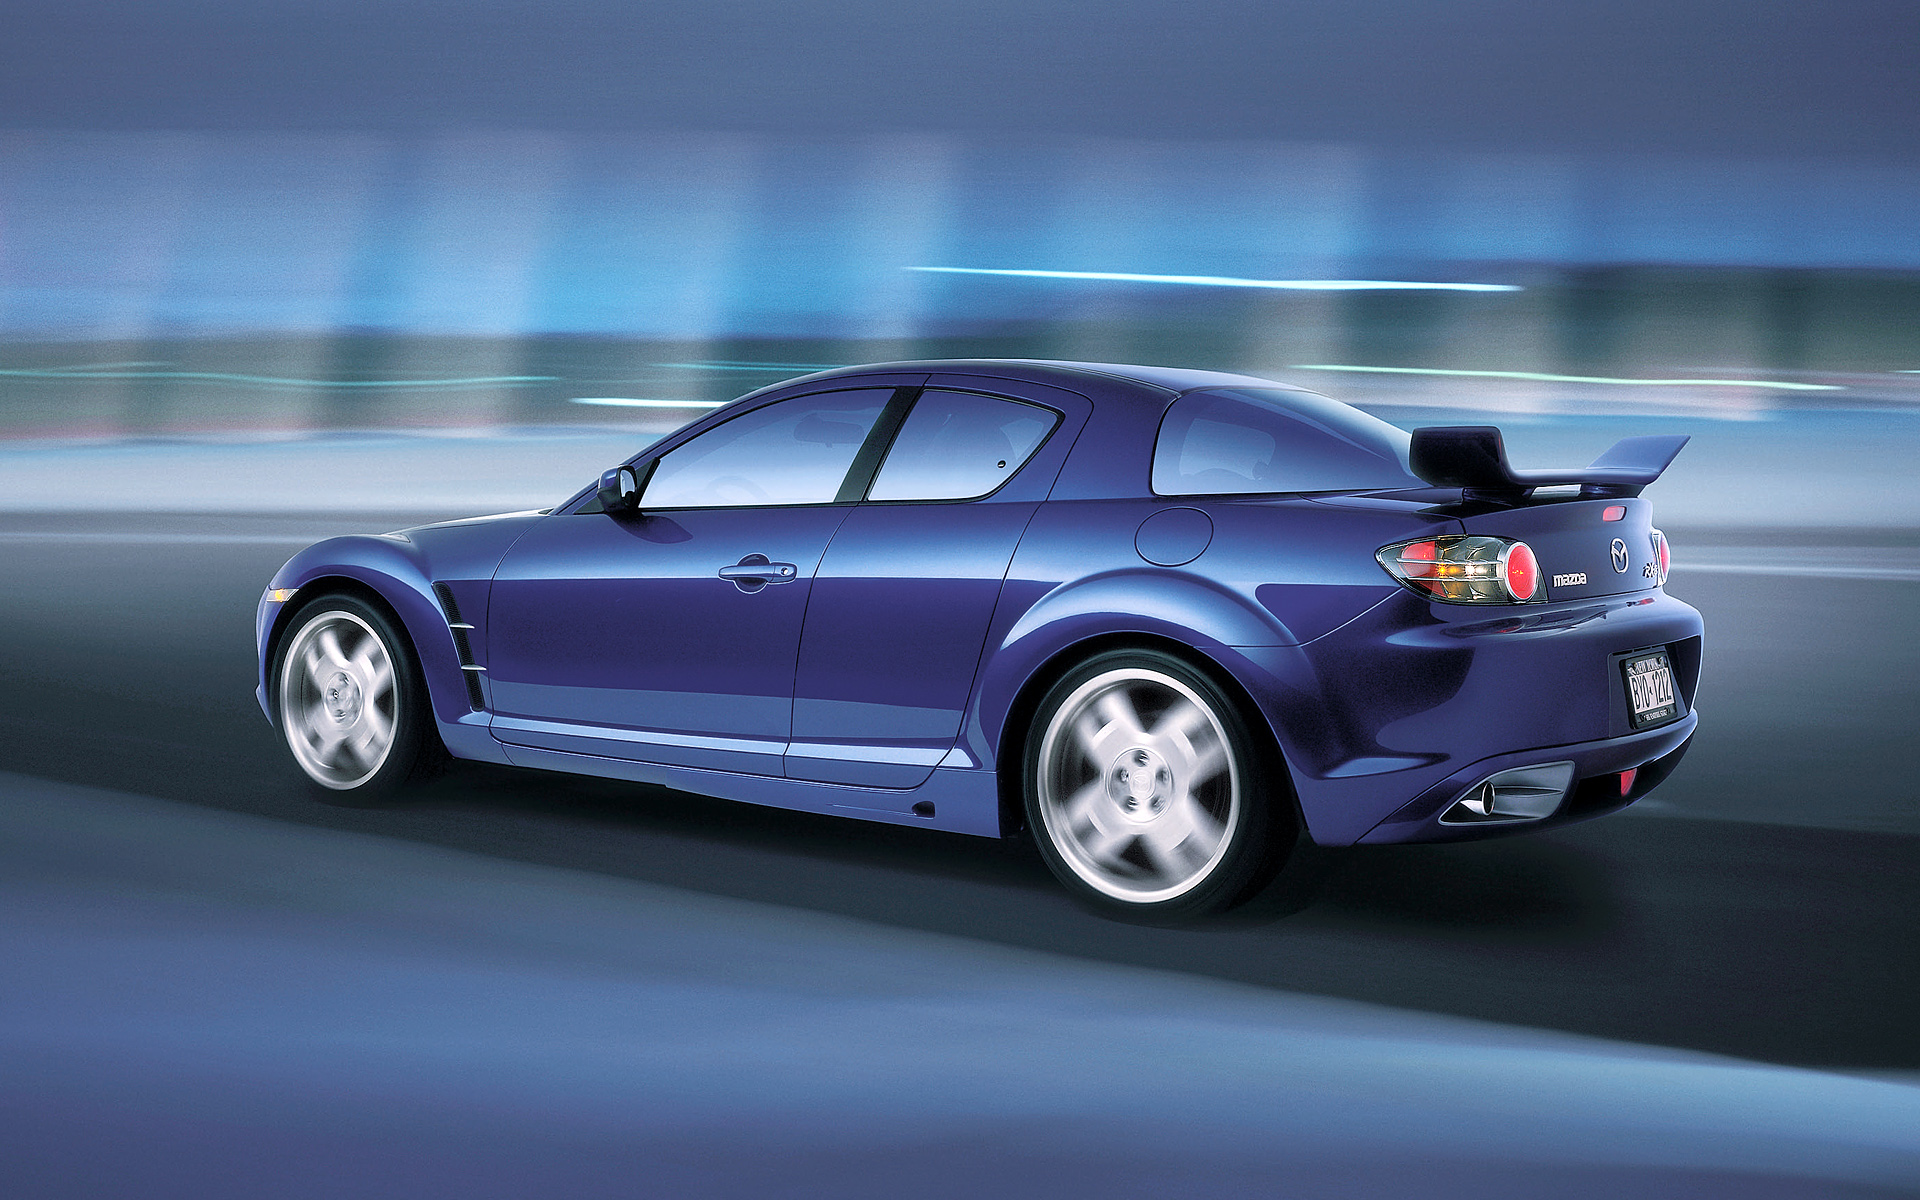  2003 Mazda RX-8 X-Men Wallpaper.